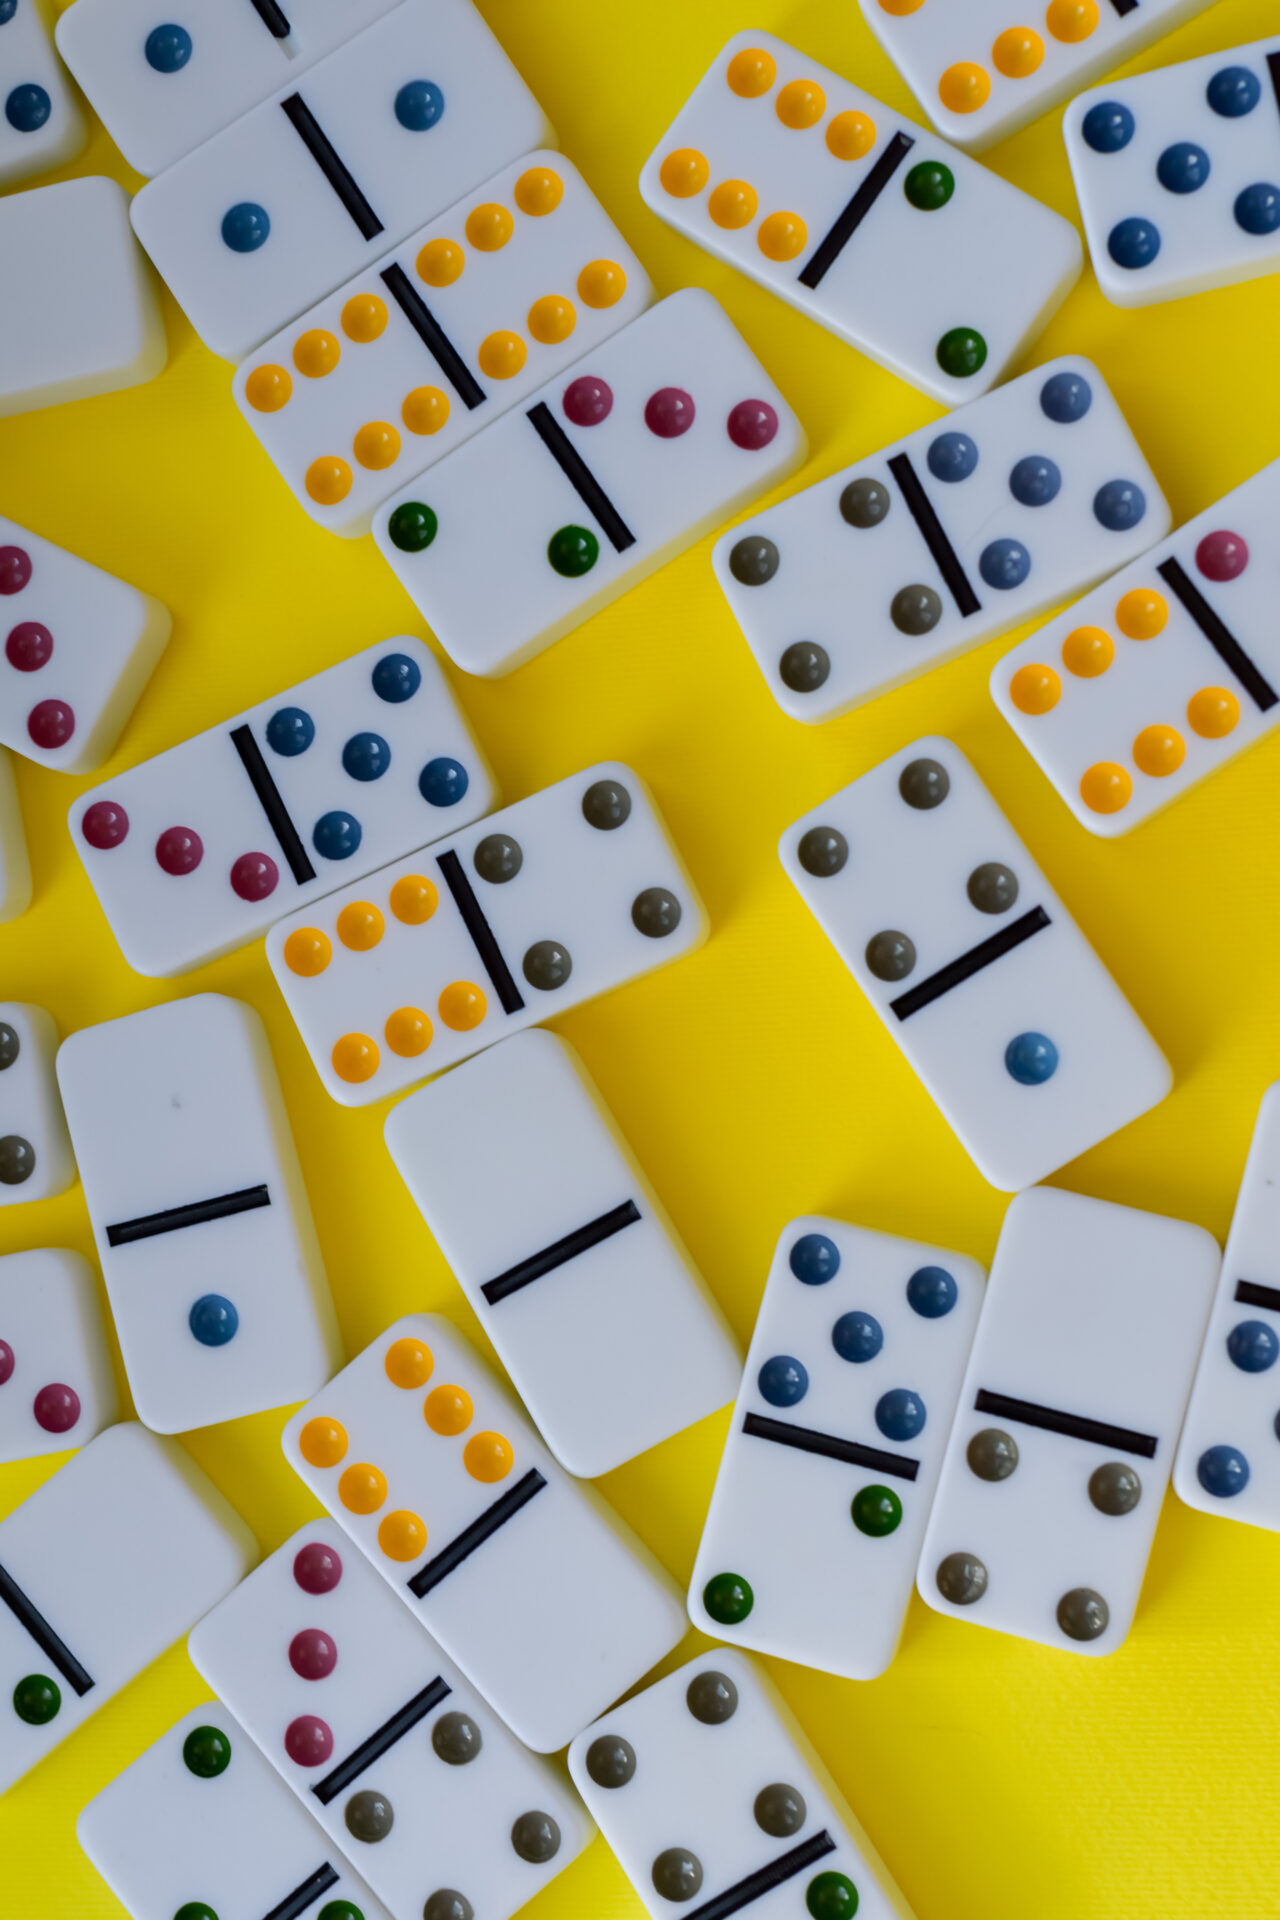 Domino board game